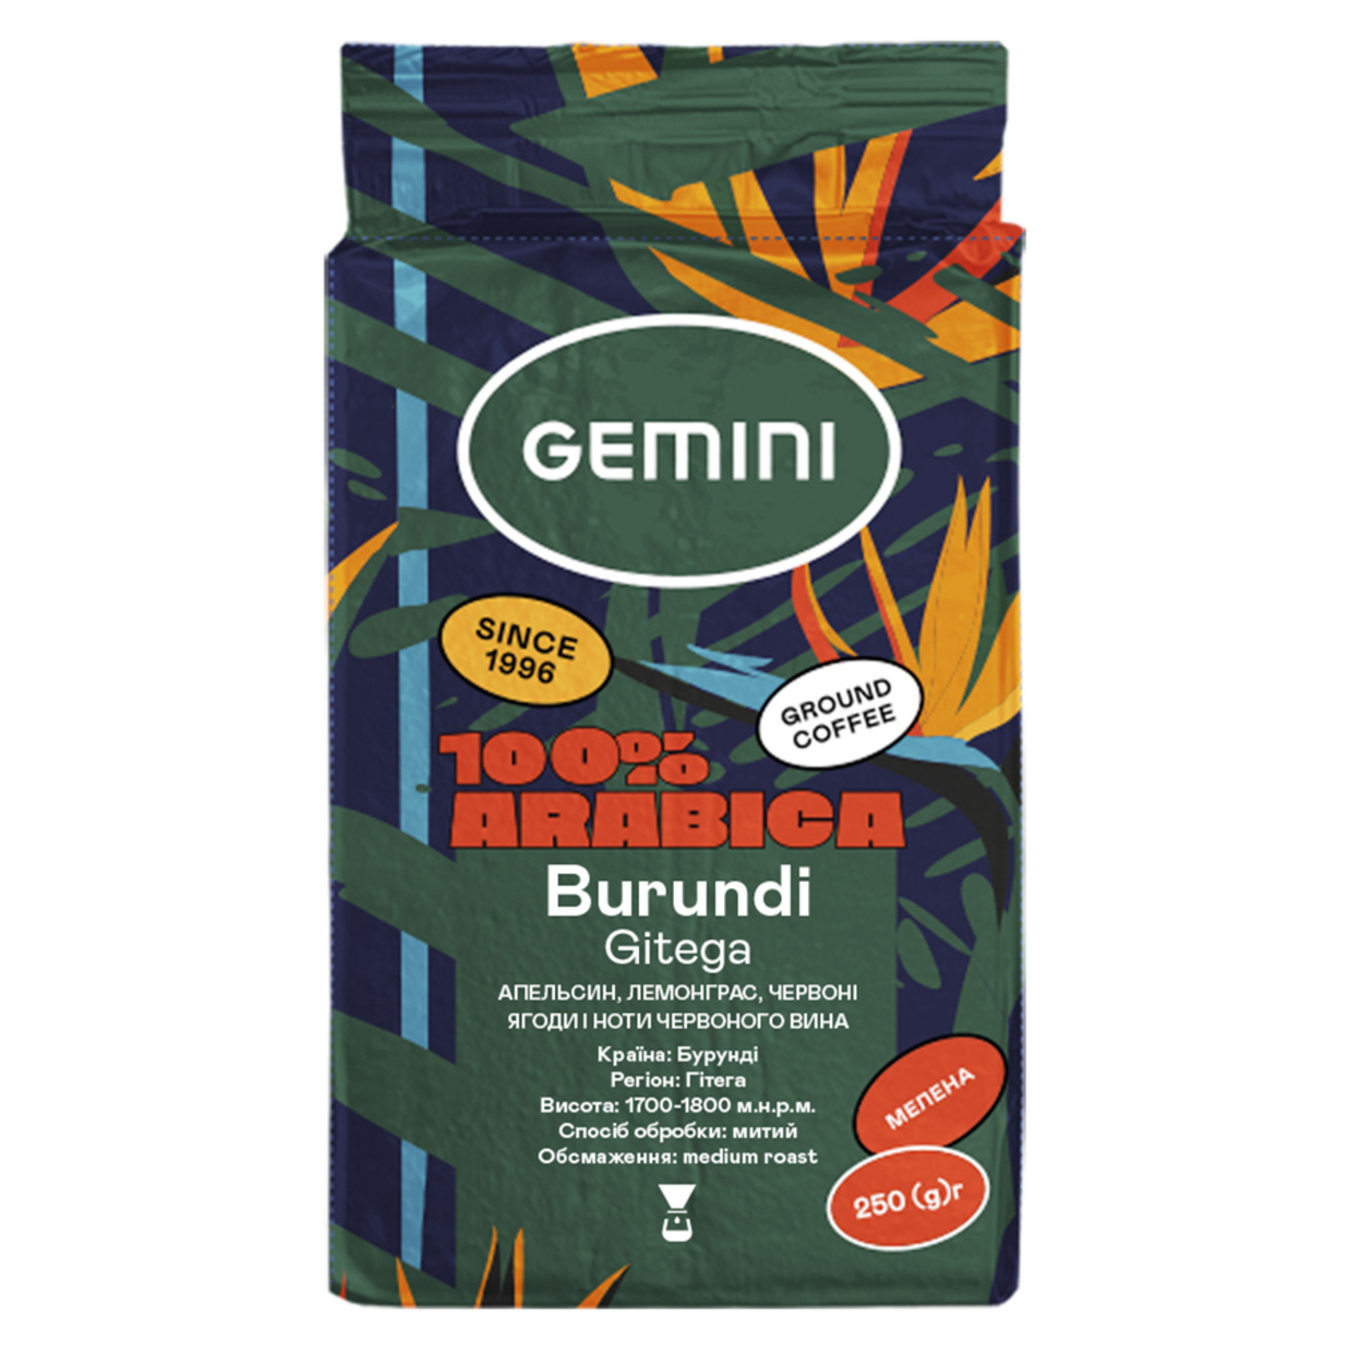 Ground coffee Gemini Burundi 250g